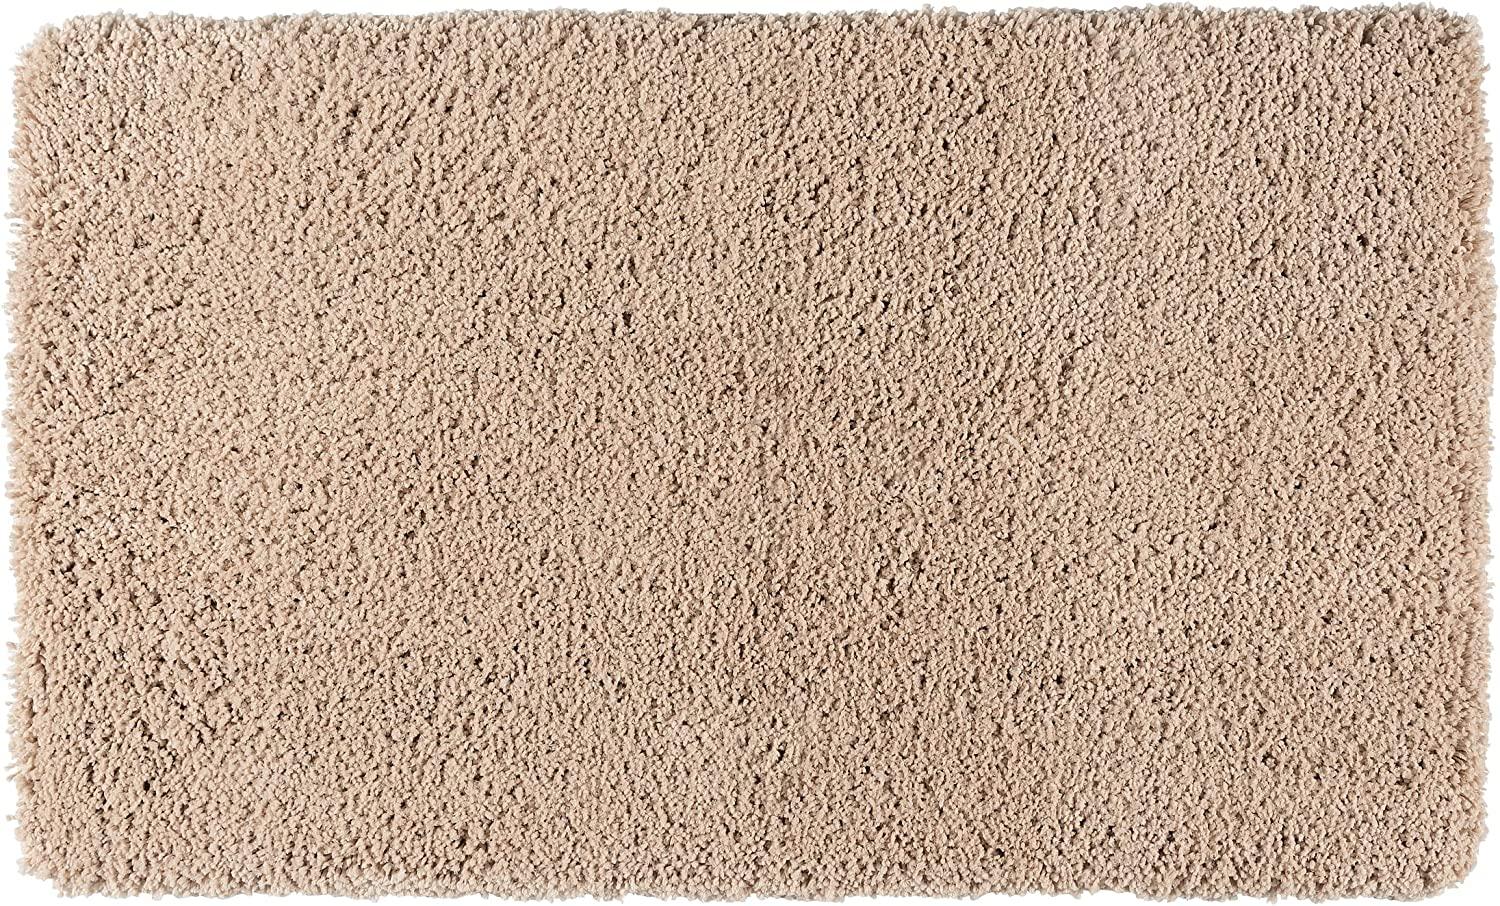 Badteppich BELIZE, sandfarben, 70 x 120 cm Bild 1